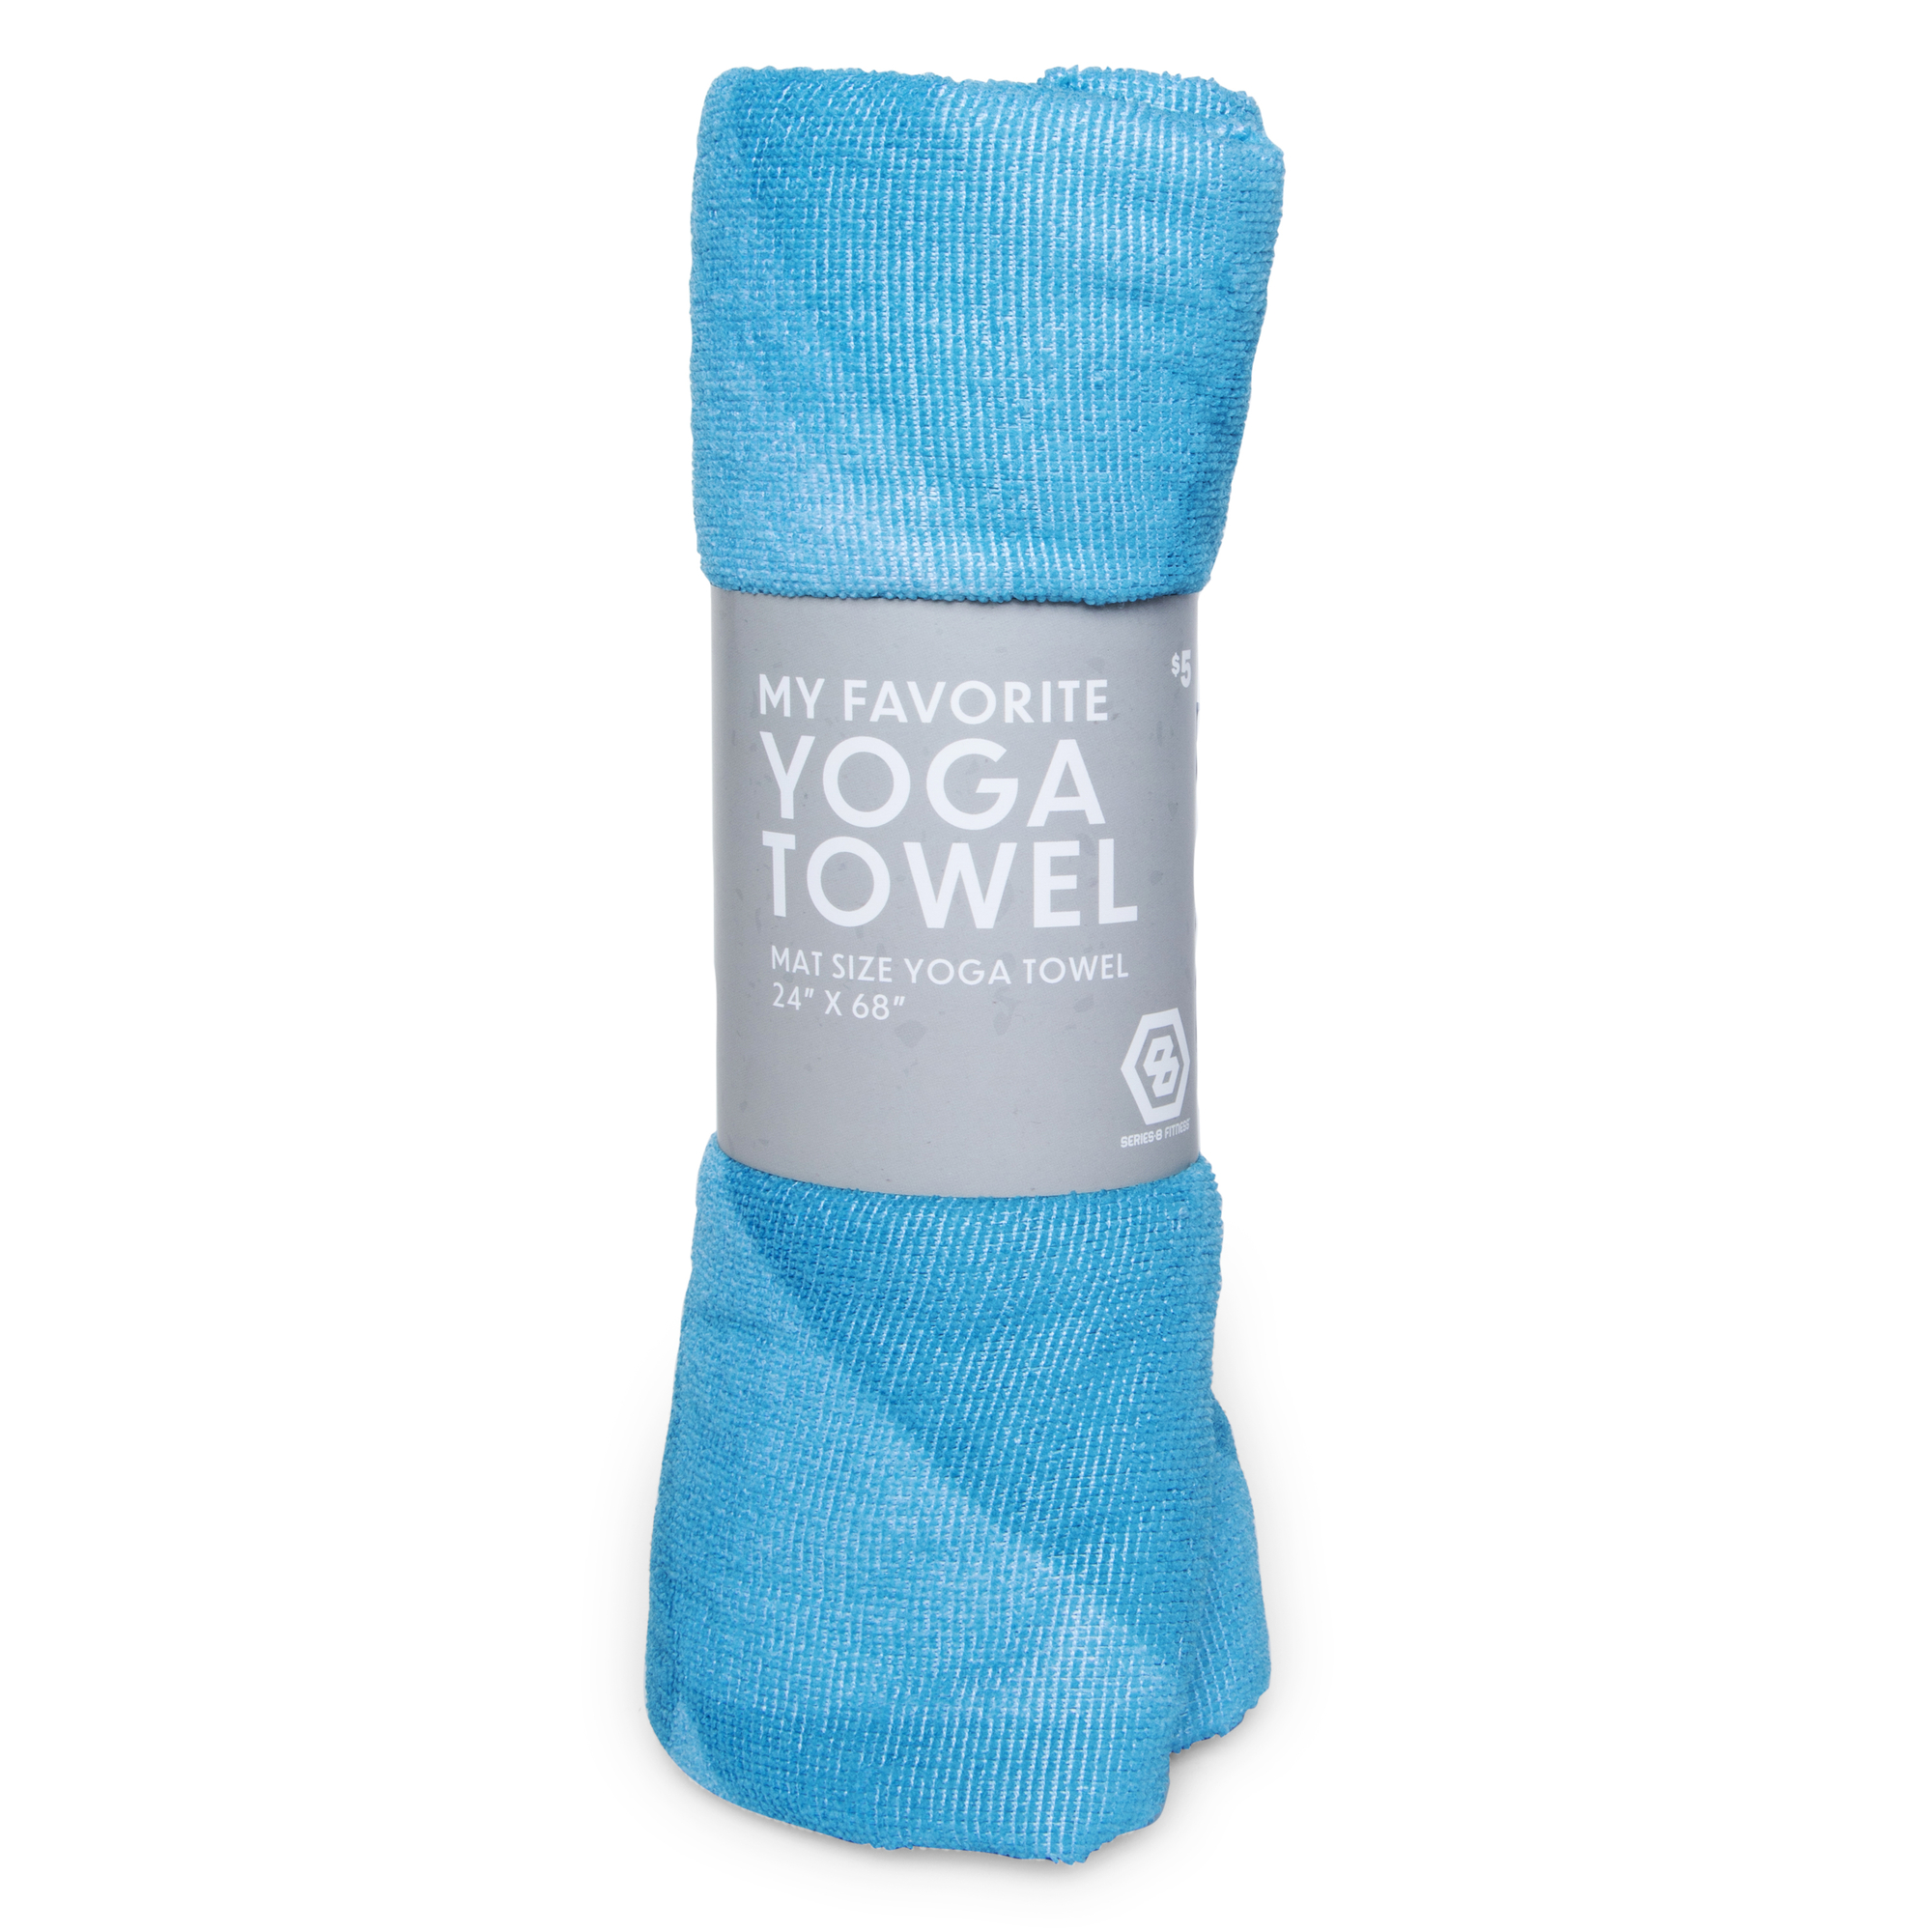 My Favorite Yoga Towel Mat Size Yoga Towel 24 x 68 Series 8 Fitness